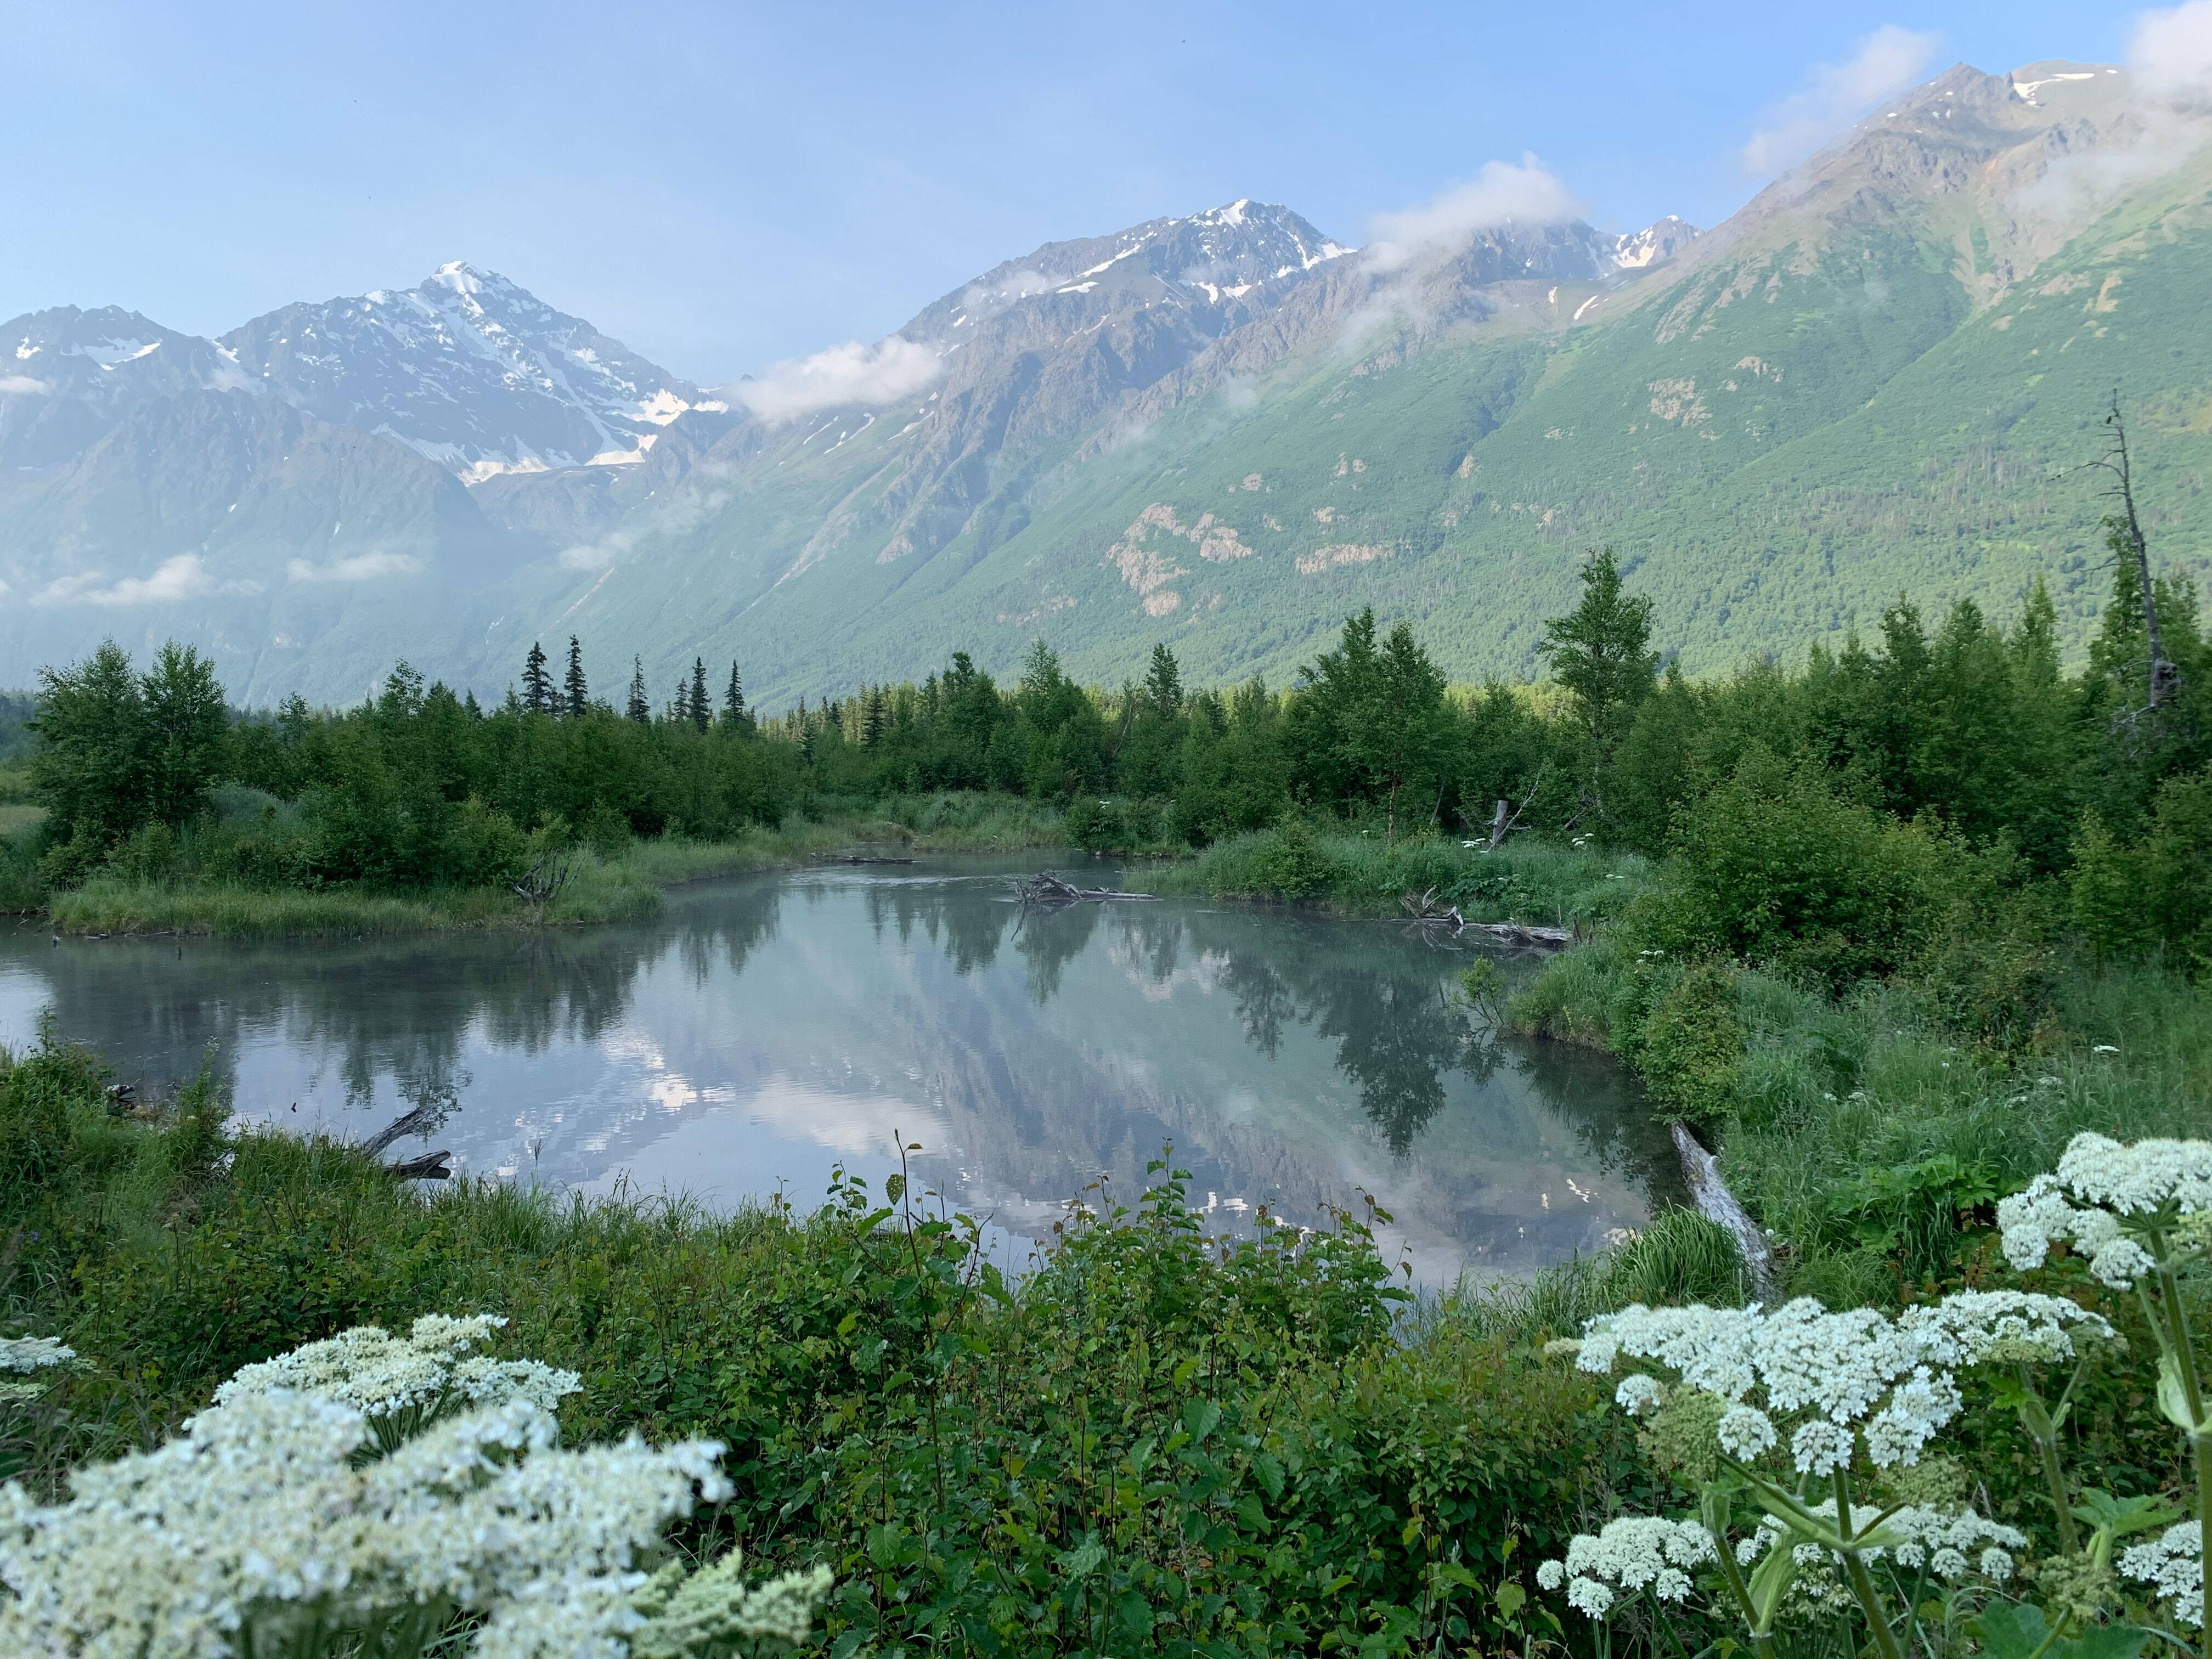 O Alasca é um dos 50 estados dos Estados Unidos, mas faz fronteira apenas com o Canadá. Foto: Pexels